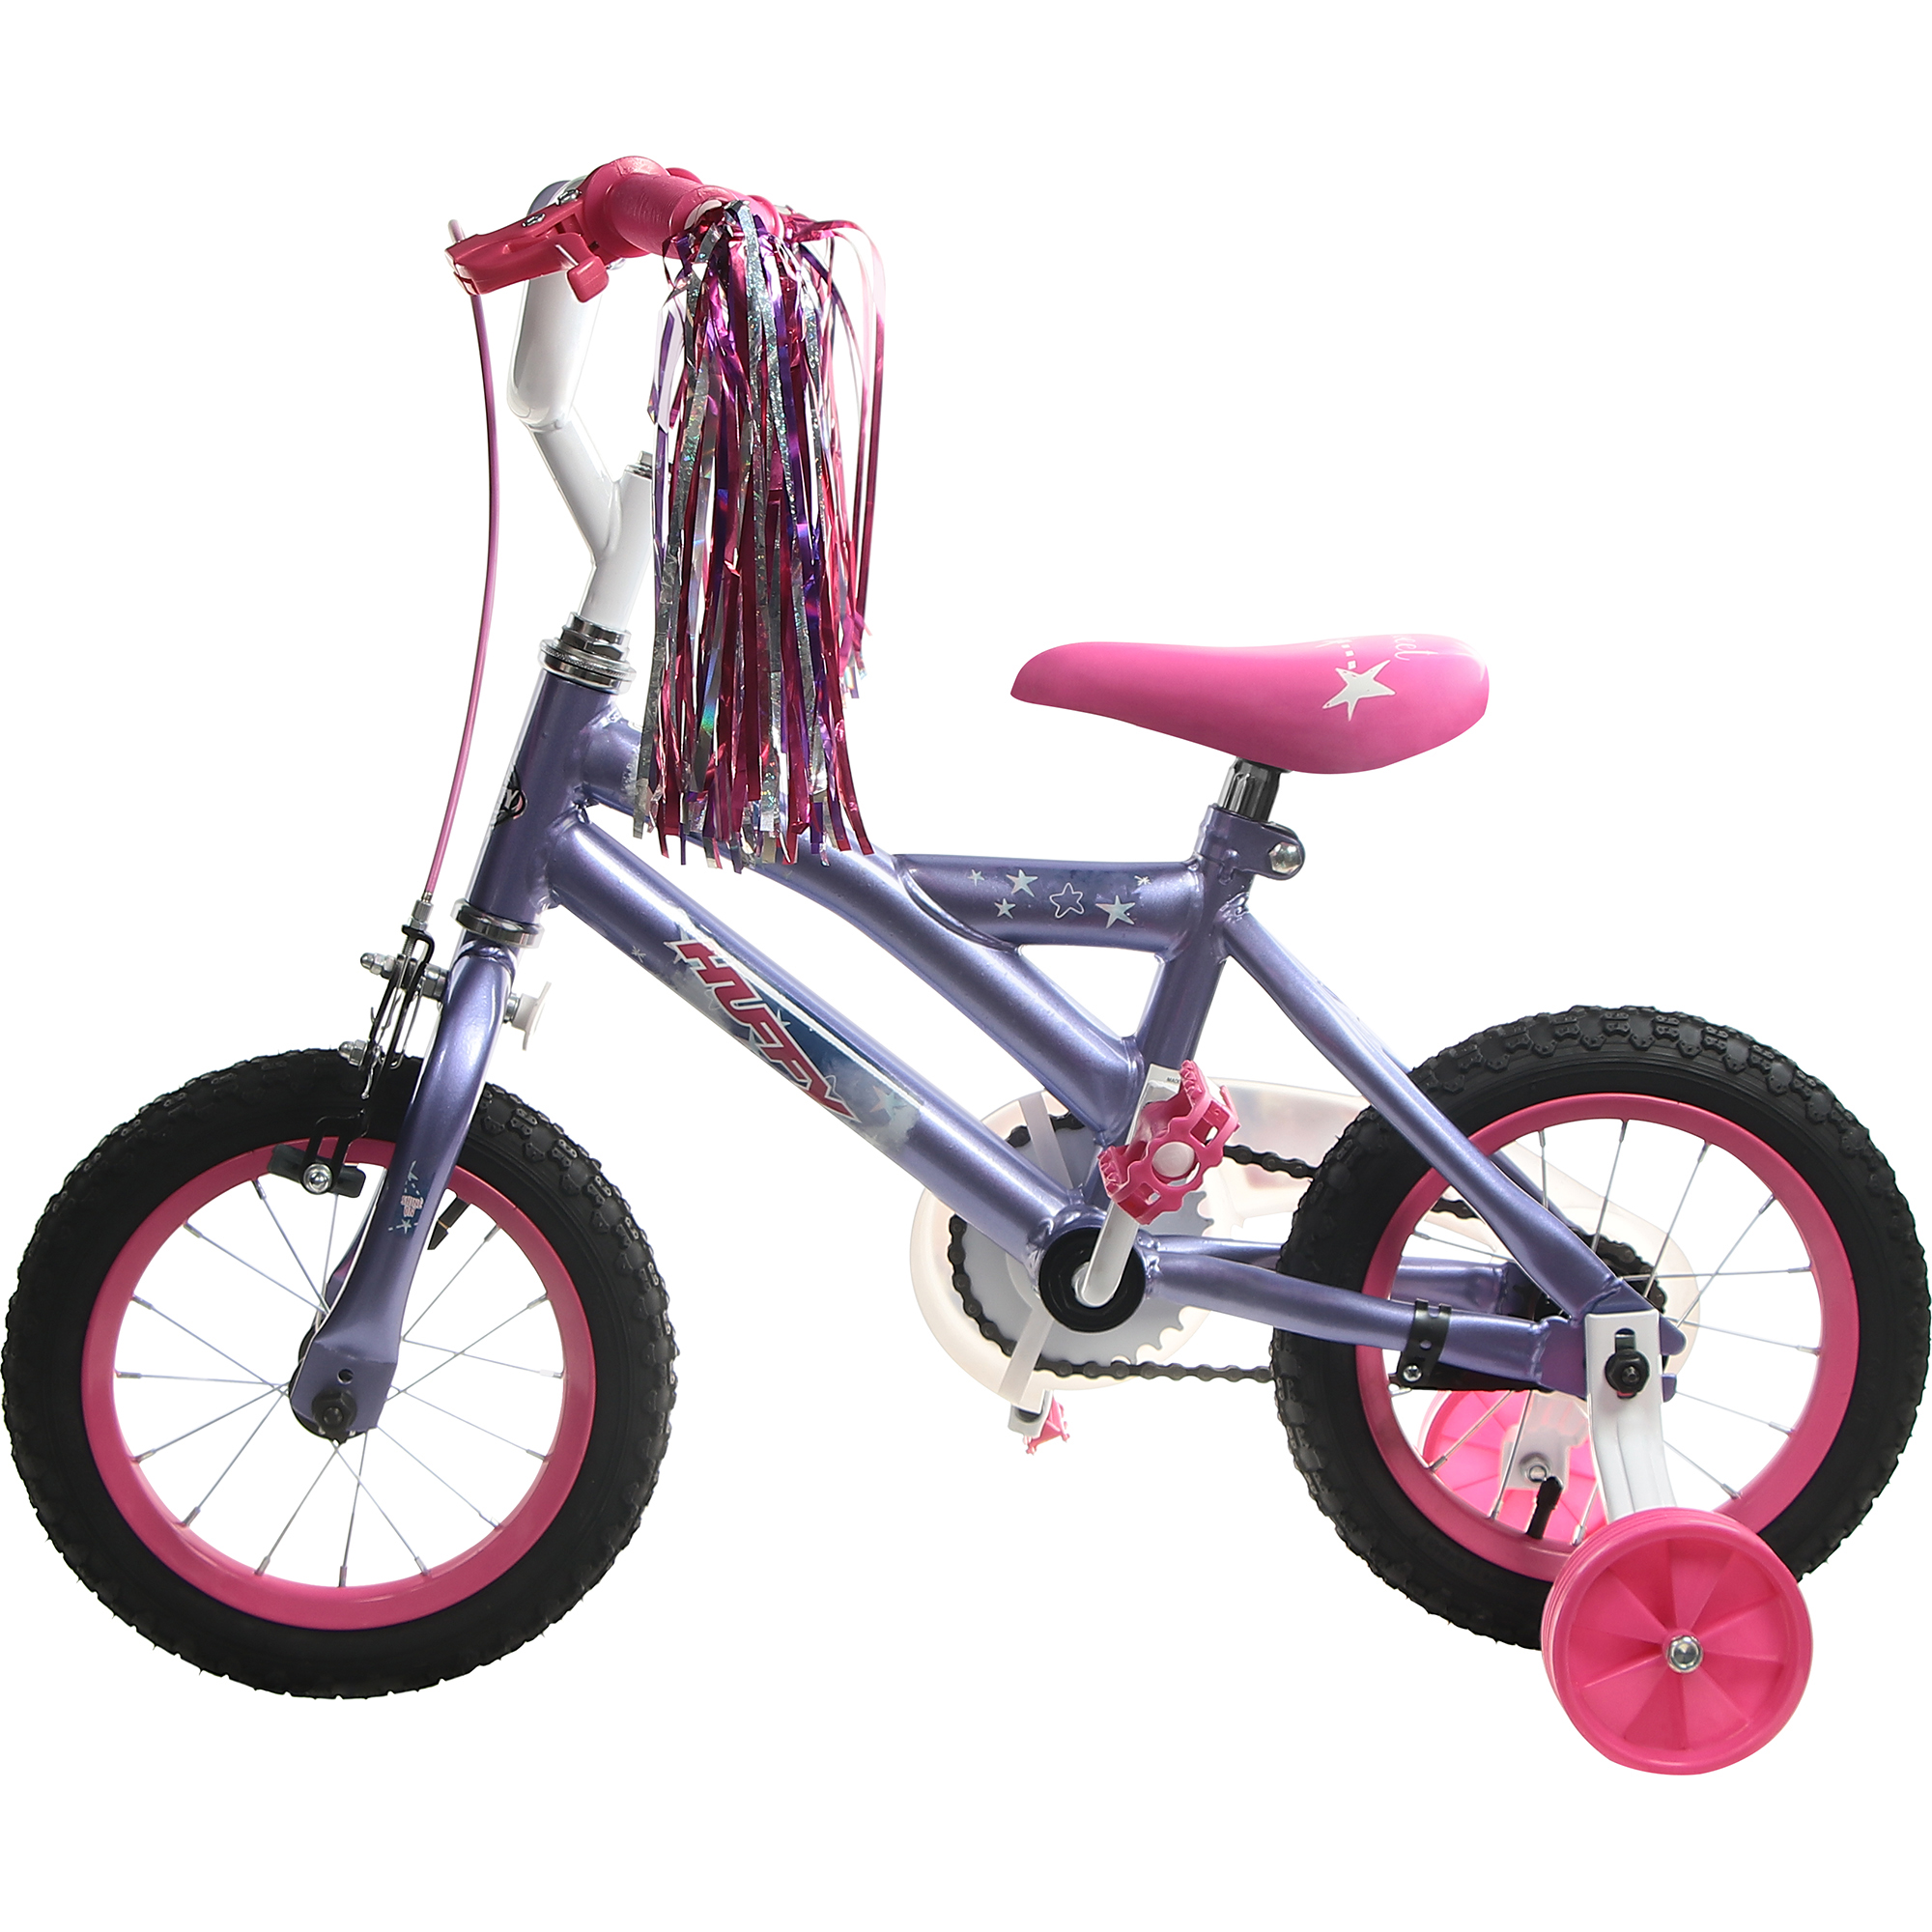 Велосипед детский Huffy So sweet, 12, для девочек кашпо велосипед 34 11 18см